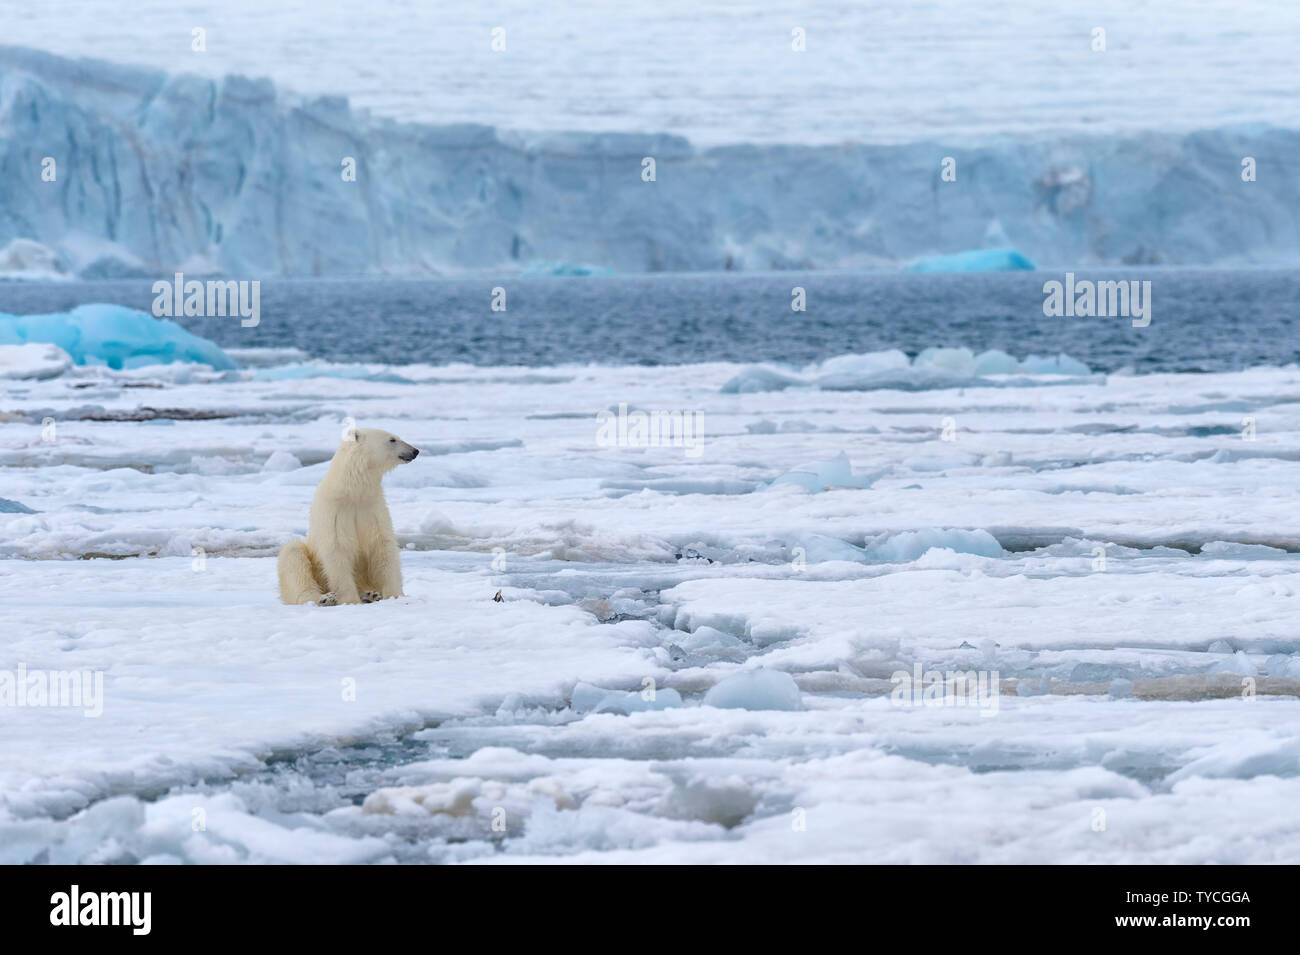 Female polar bear (Ursus maritimus) sitting on pack ice, Bjoernsundet, Hinlopen Strait, Spitsbergen Island, Svalbard Archipelago, Norway Stock Photo